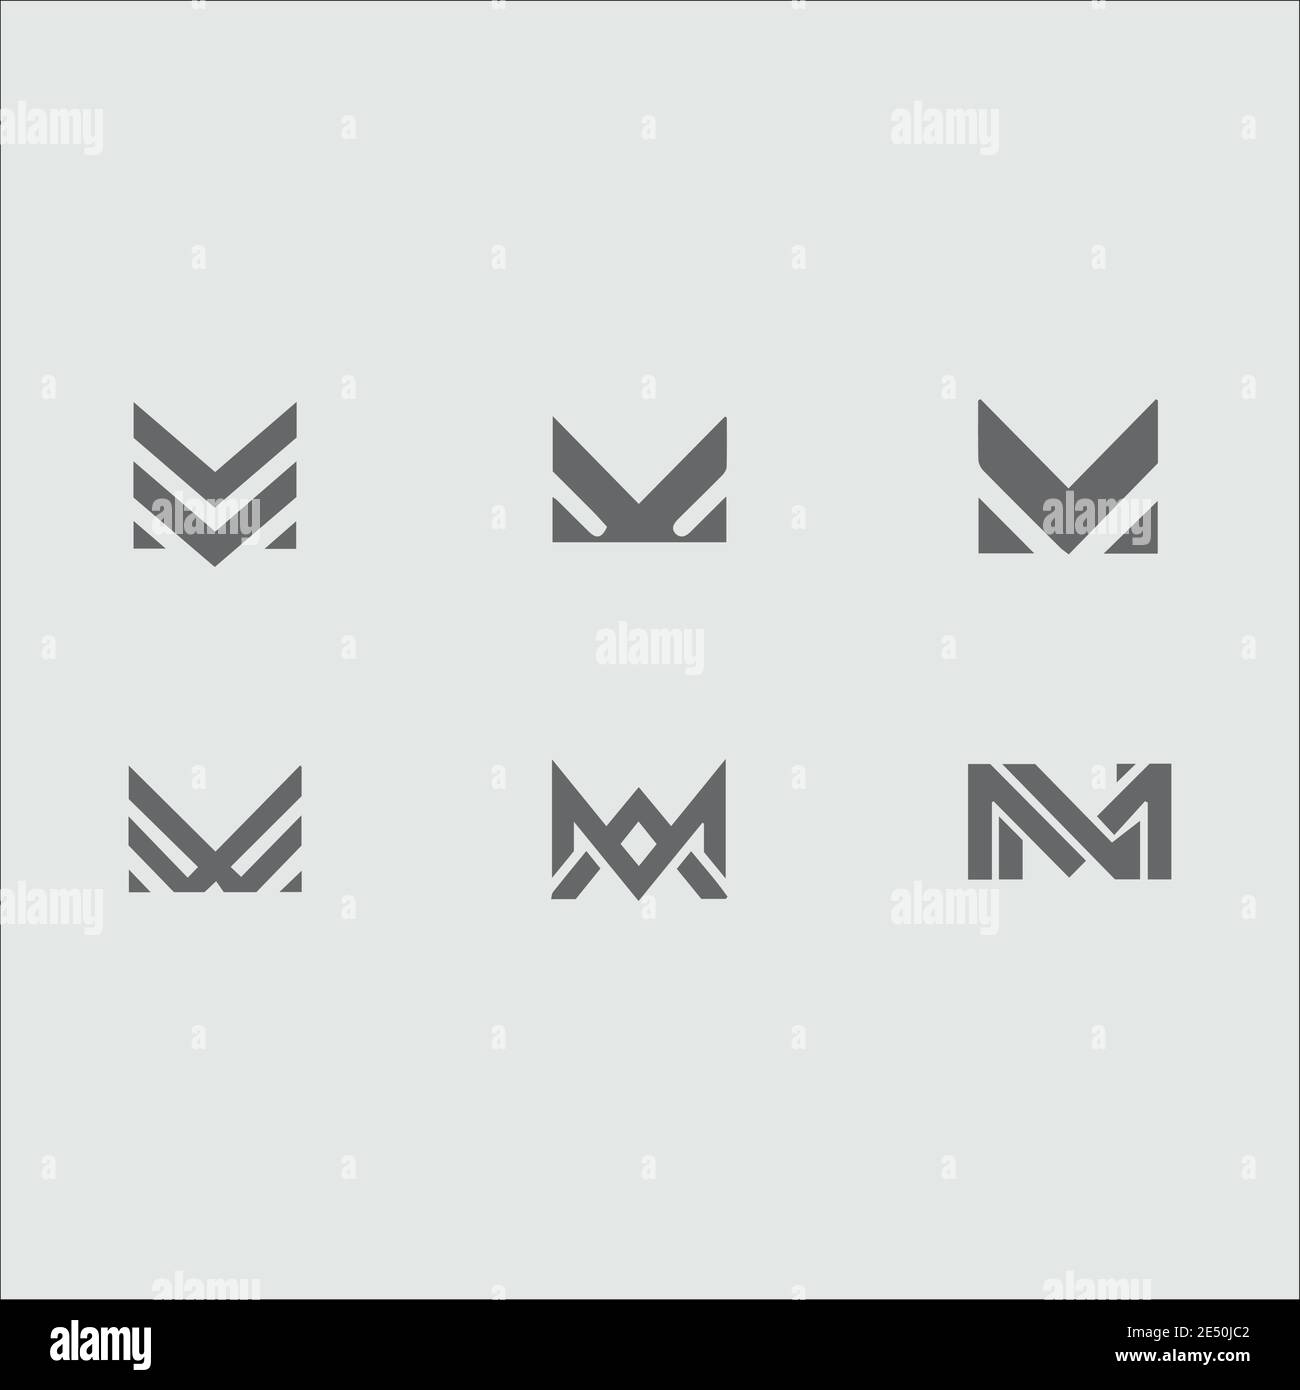 m letter logo